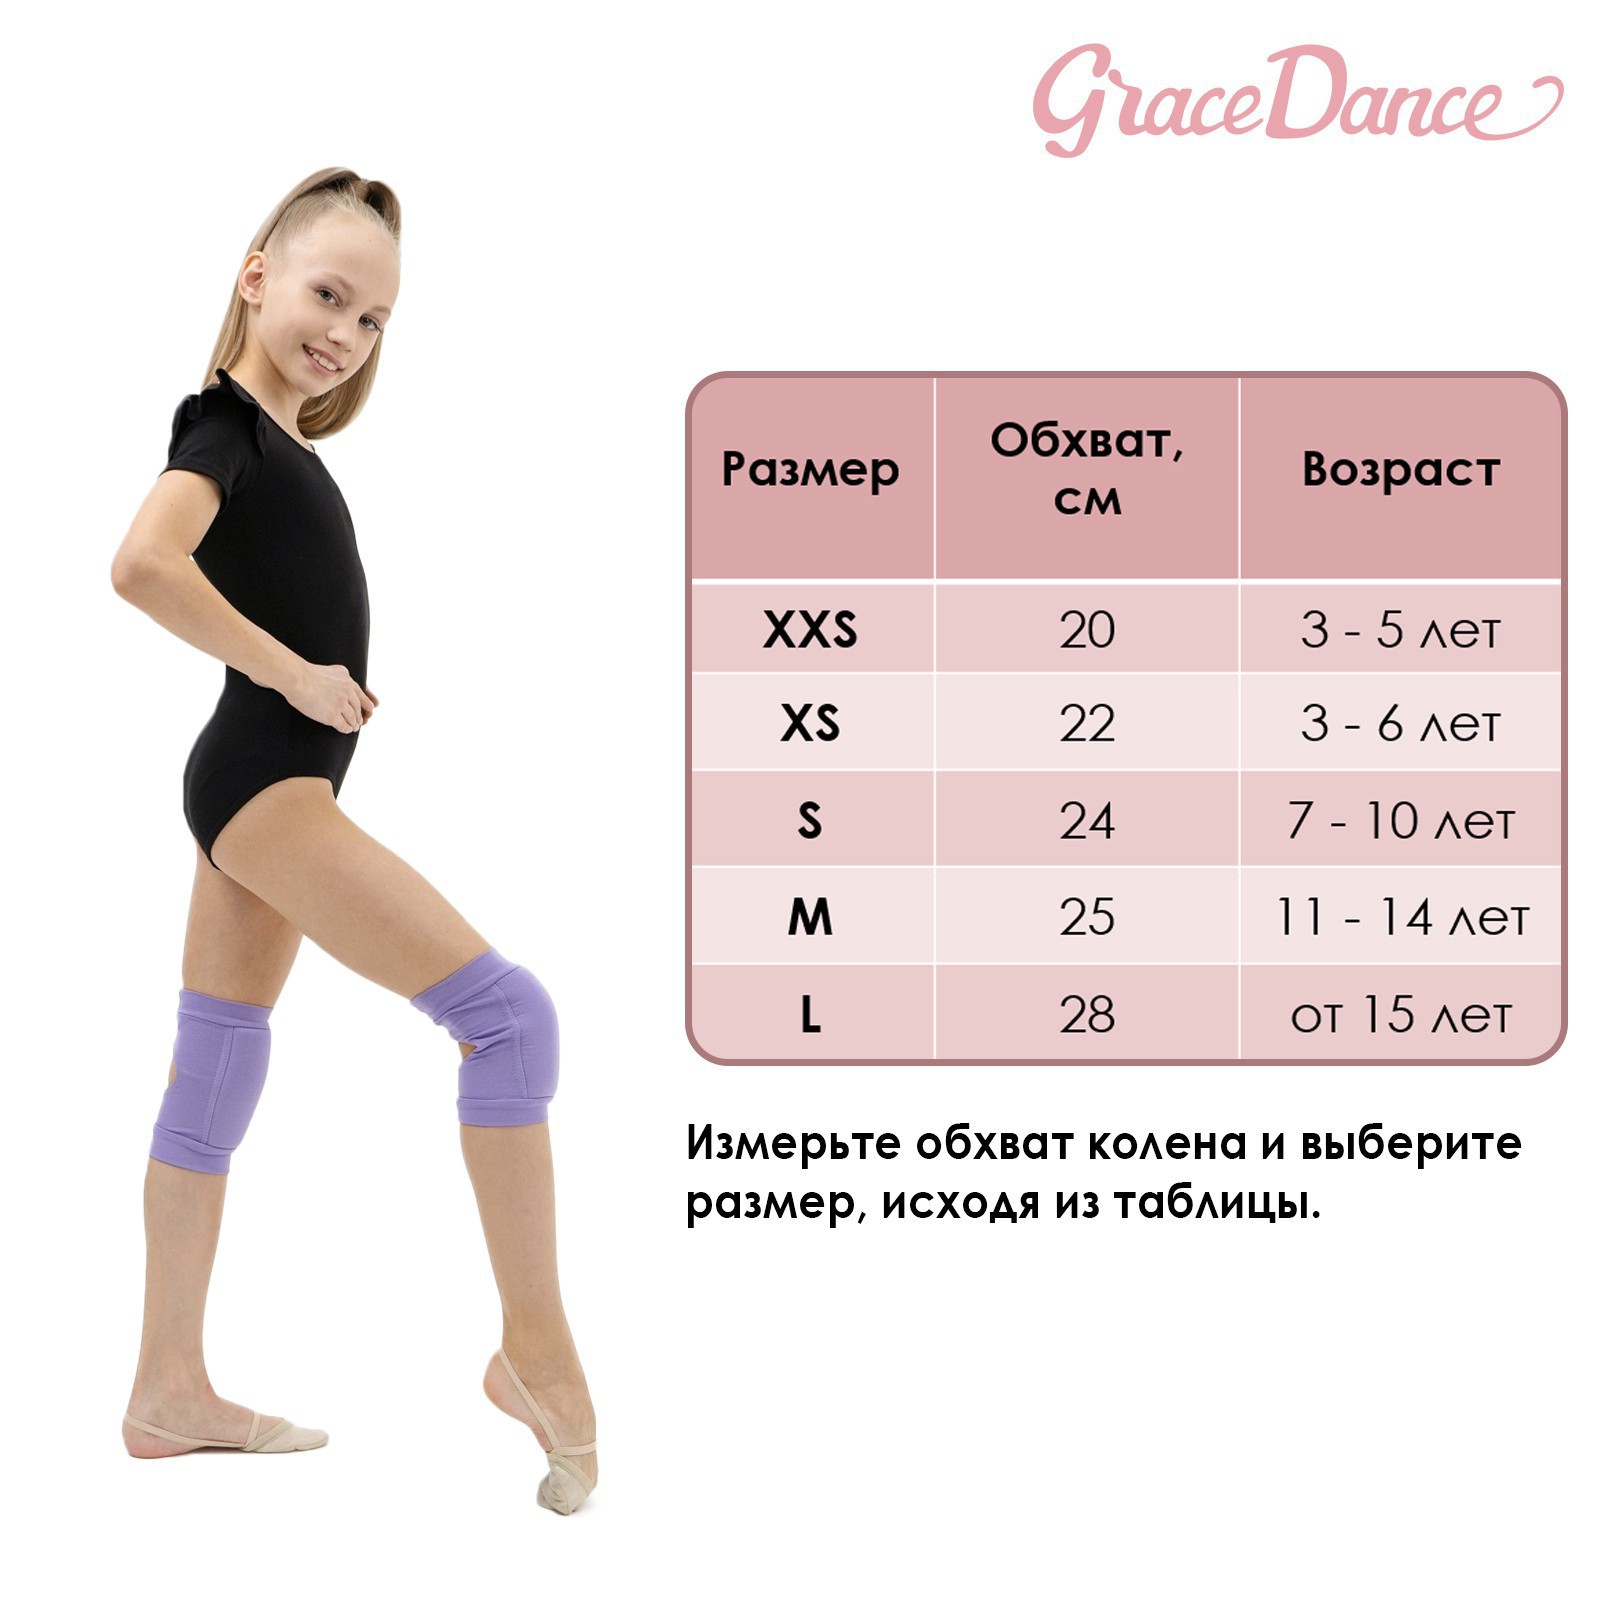 Наколенники Grace Dance для гимнастики и танцев. размер XXS 3-5 лет. цвет чёрный - фото 11